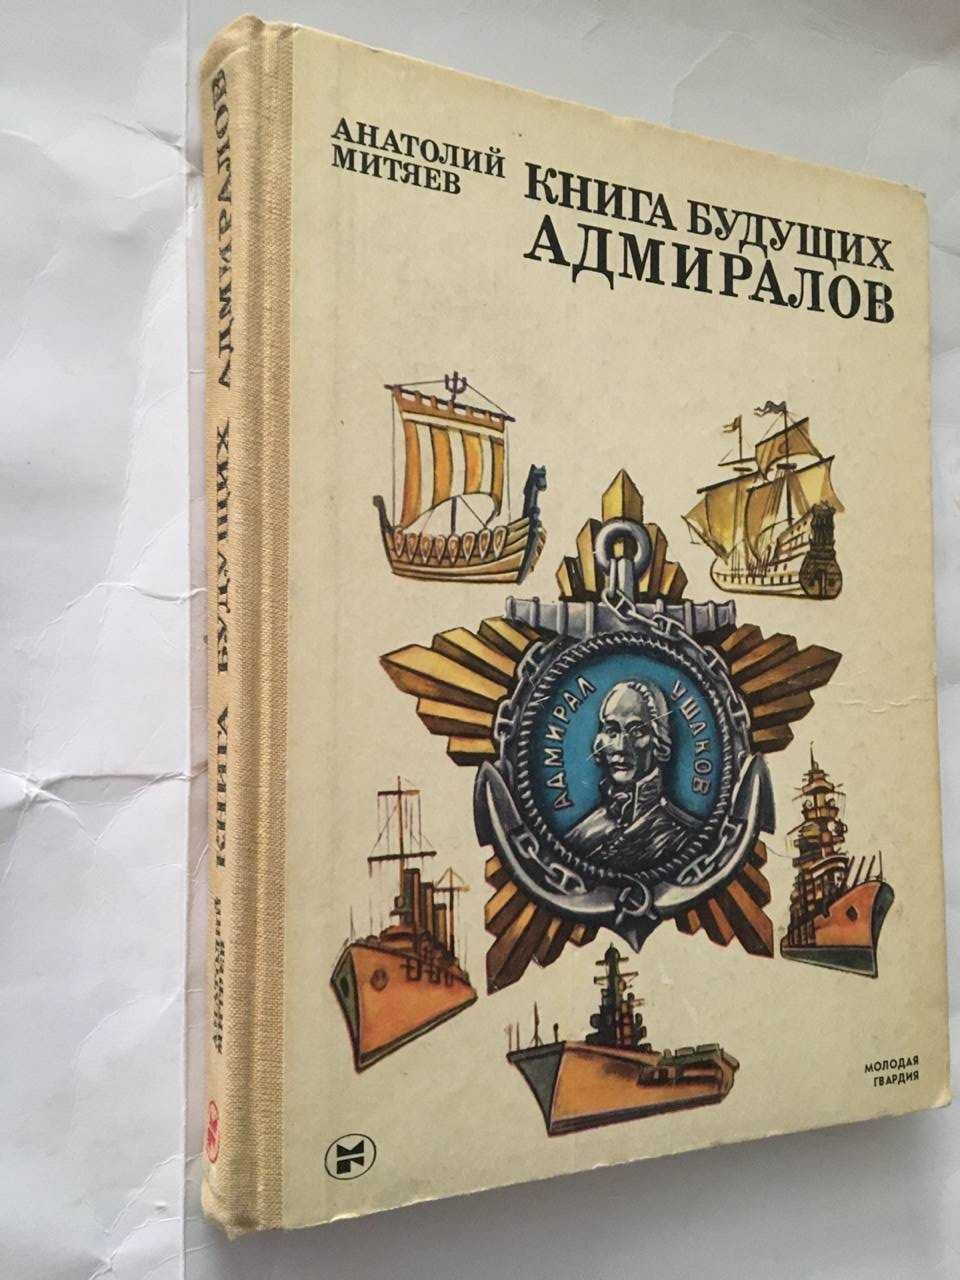 Митяев Анатолий   Книга  будущих адмиралов